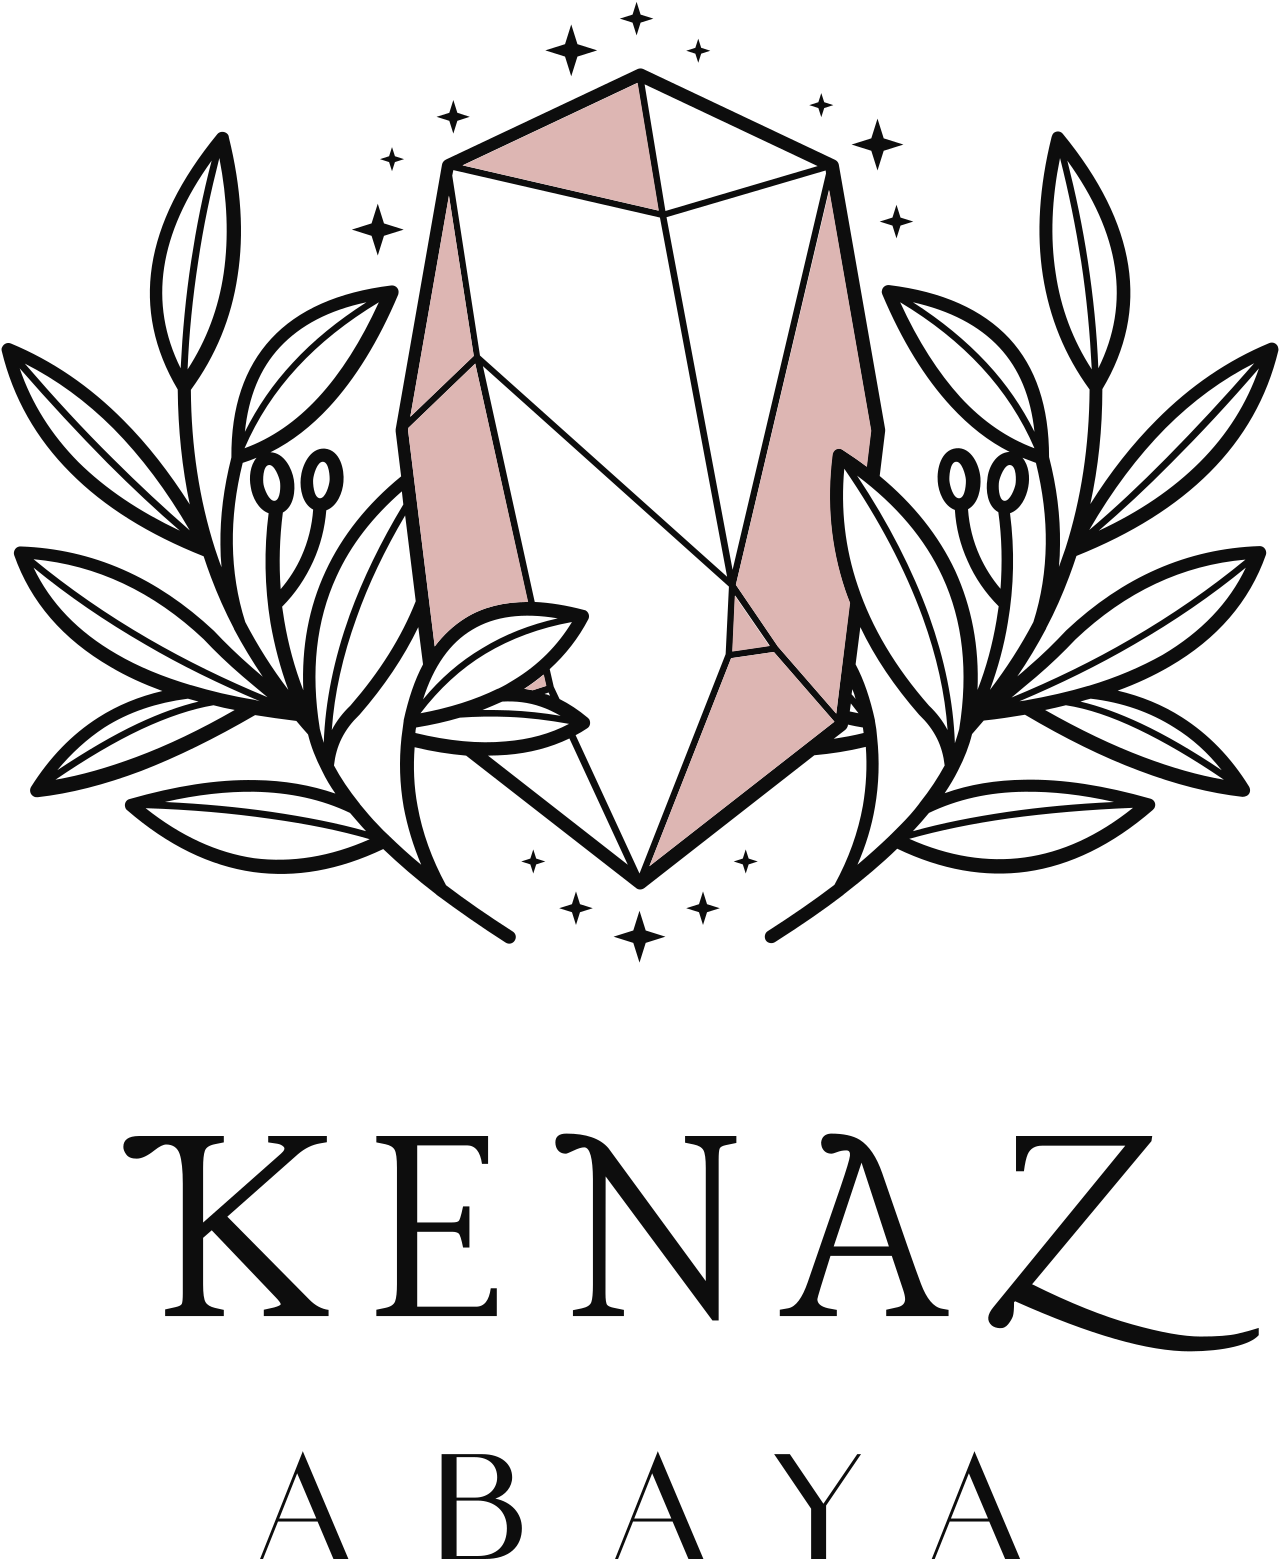 KENAZ's web page